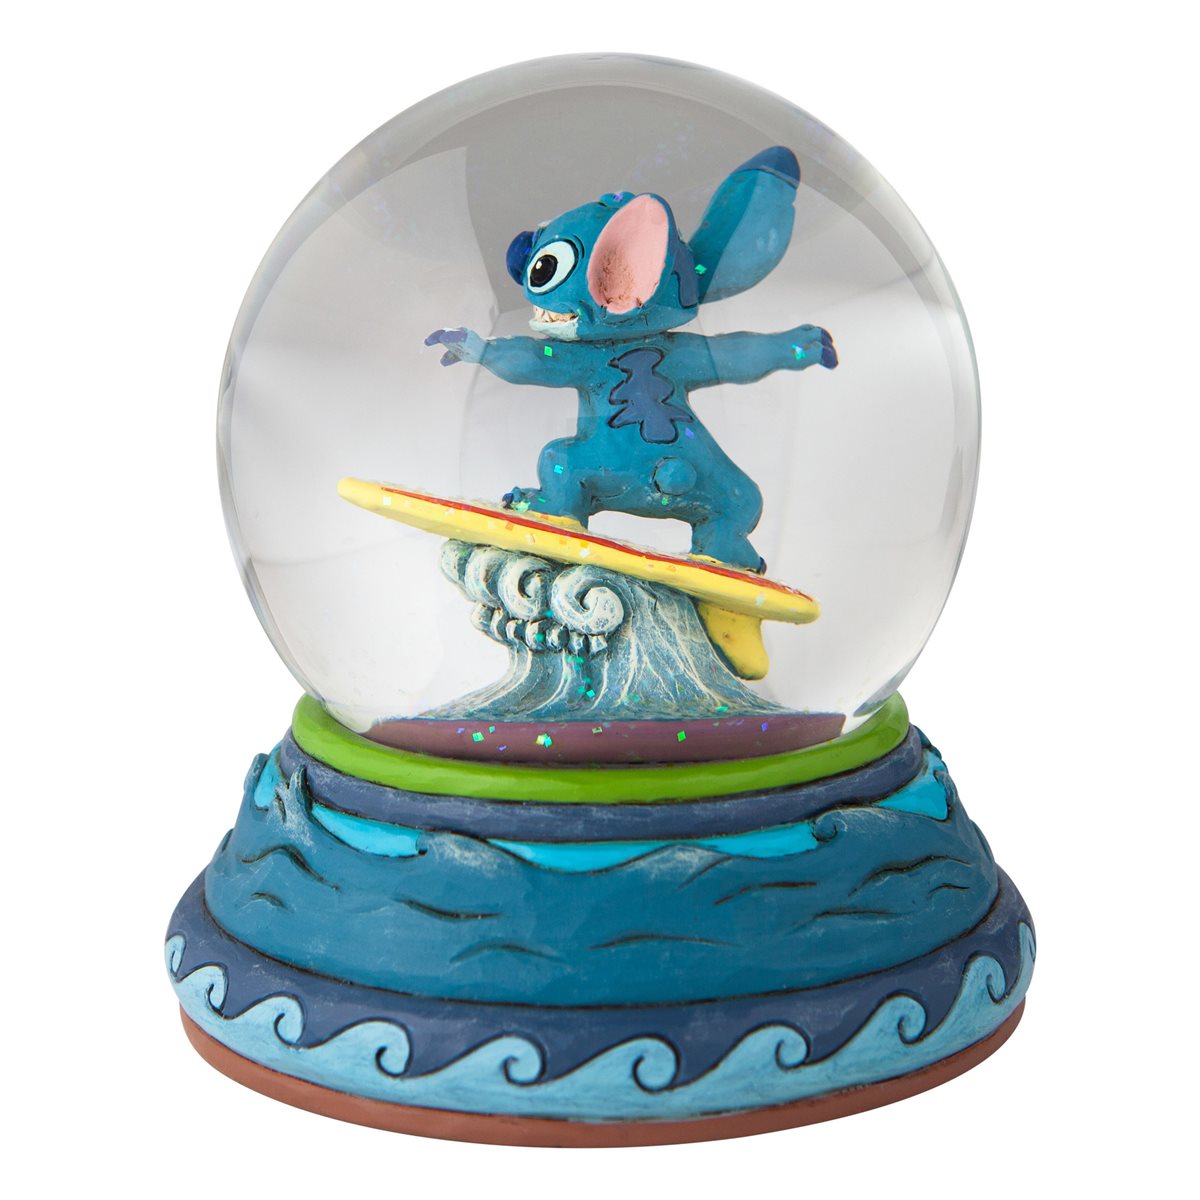 Disney Traditions Lilo & Stitch Snow Globe